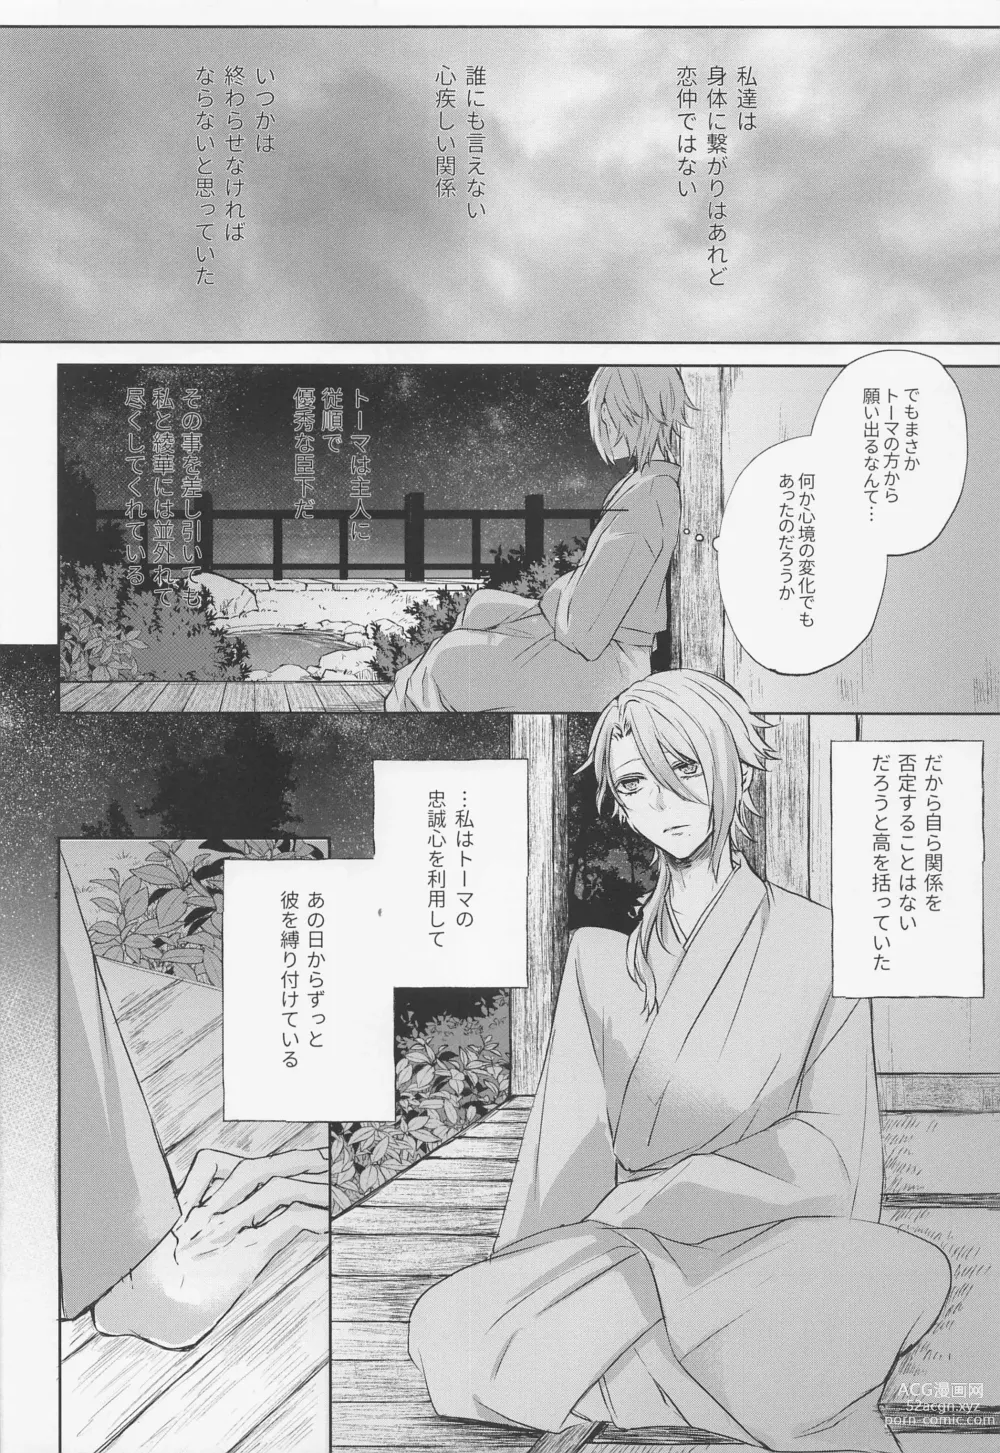 Page 9 of doujinshi Saredo, Kimi ni Sosogu Kingyo no Hanabira